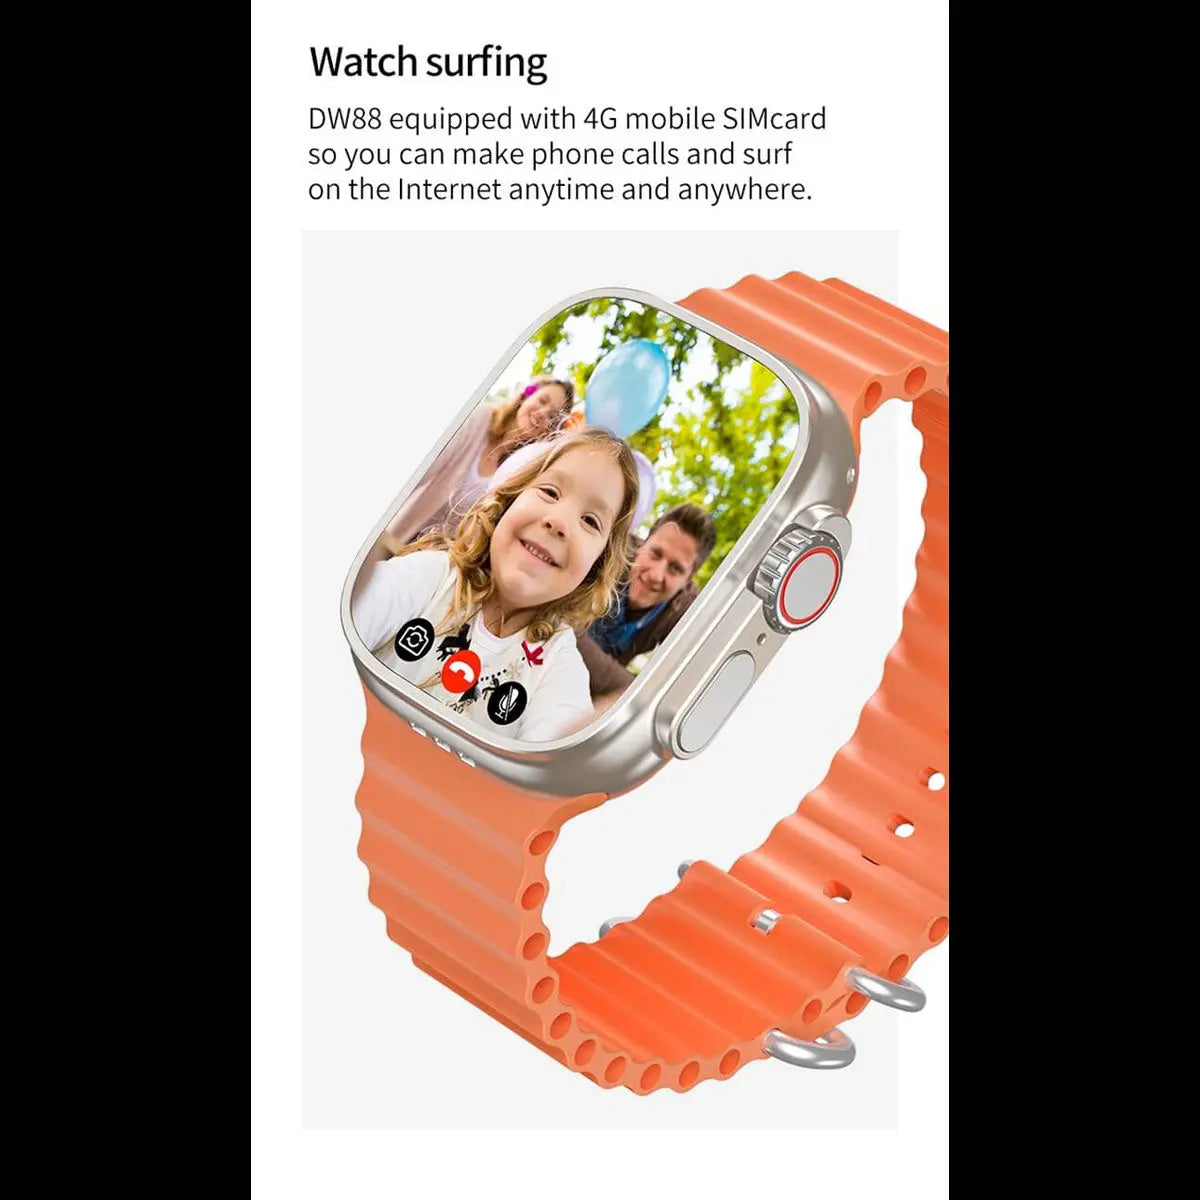 Reloj Smartwatch Dw88 4g Wifi Android 8.1 1gb Ram 16gb Rom Fralugio